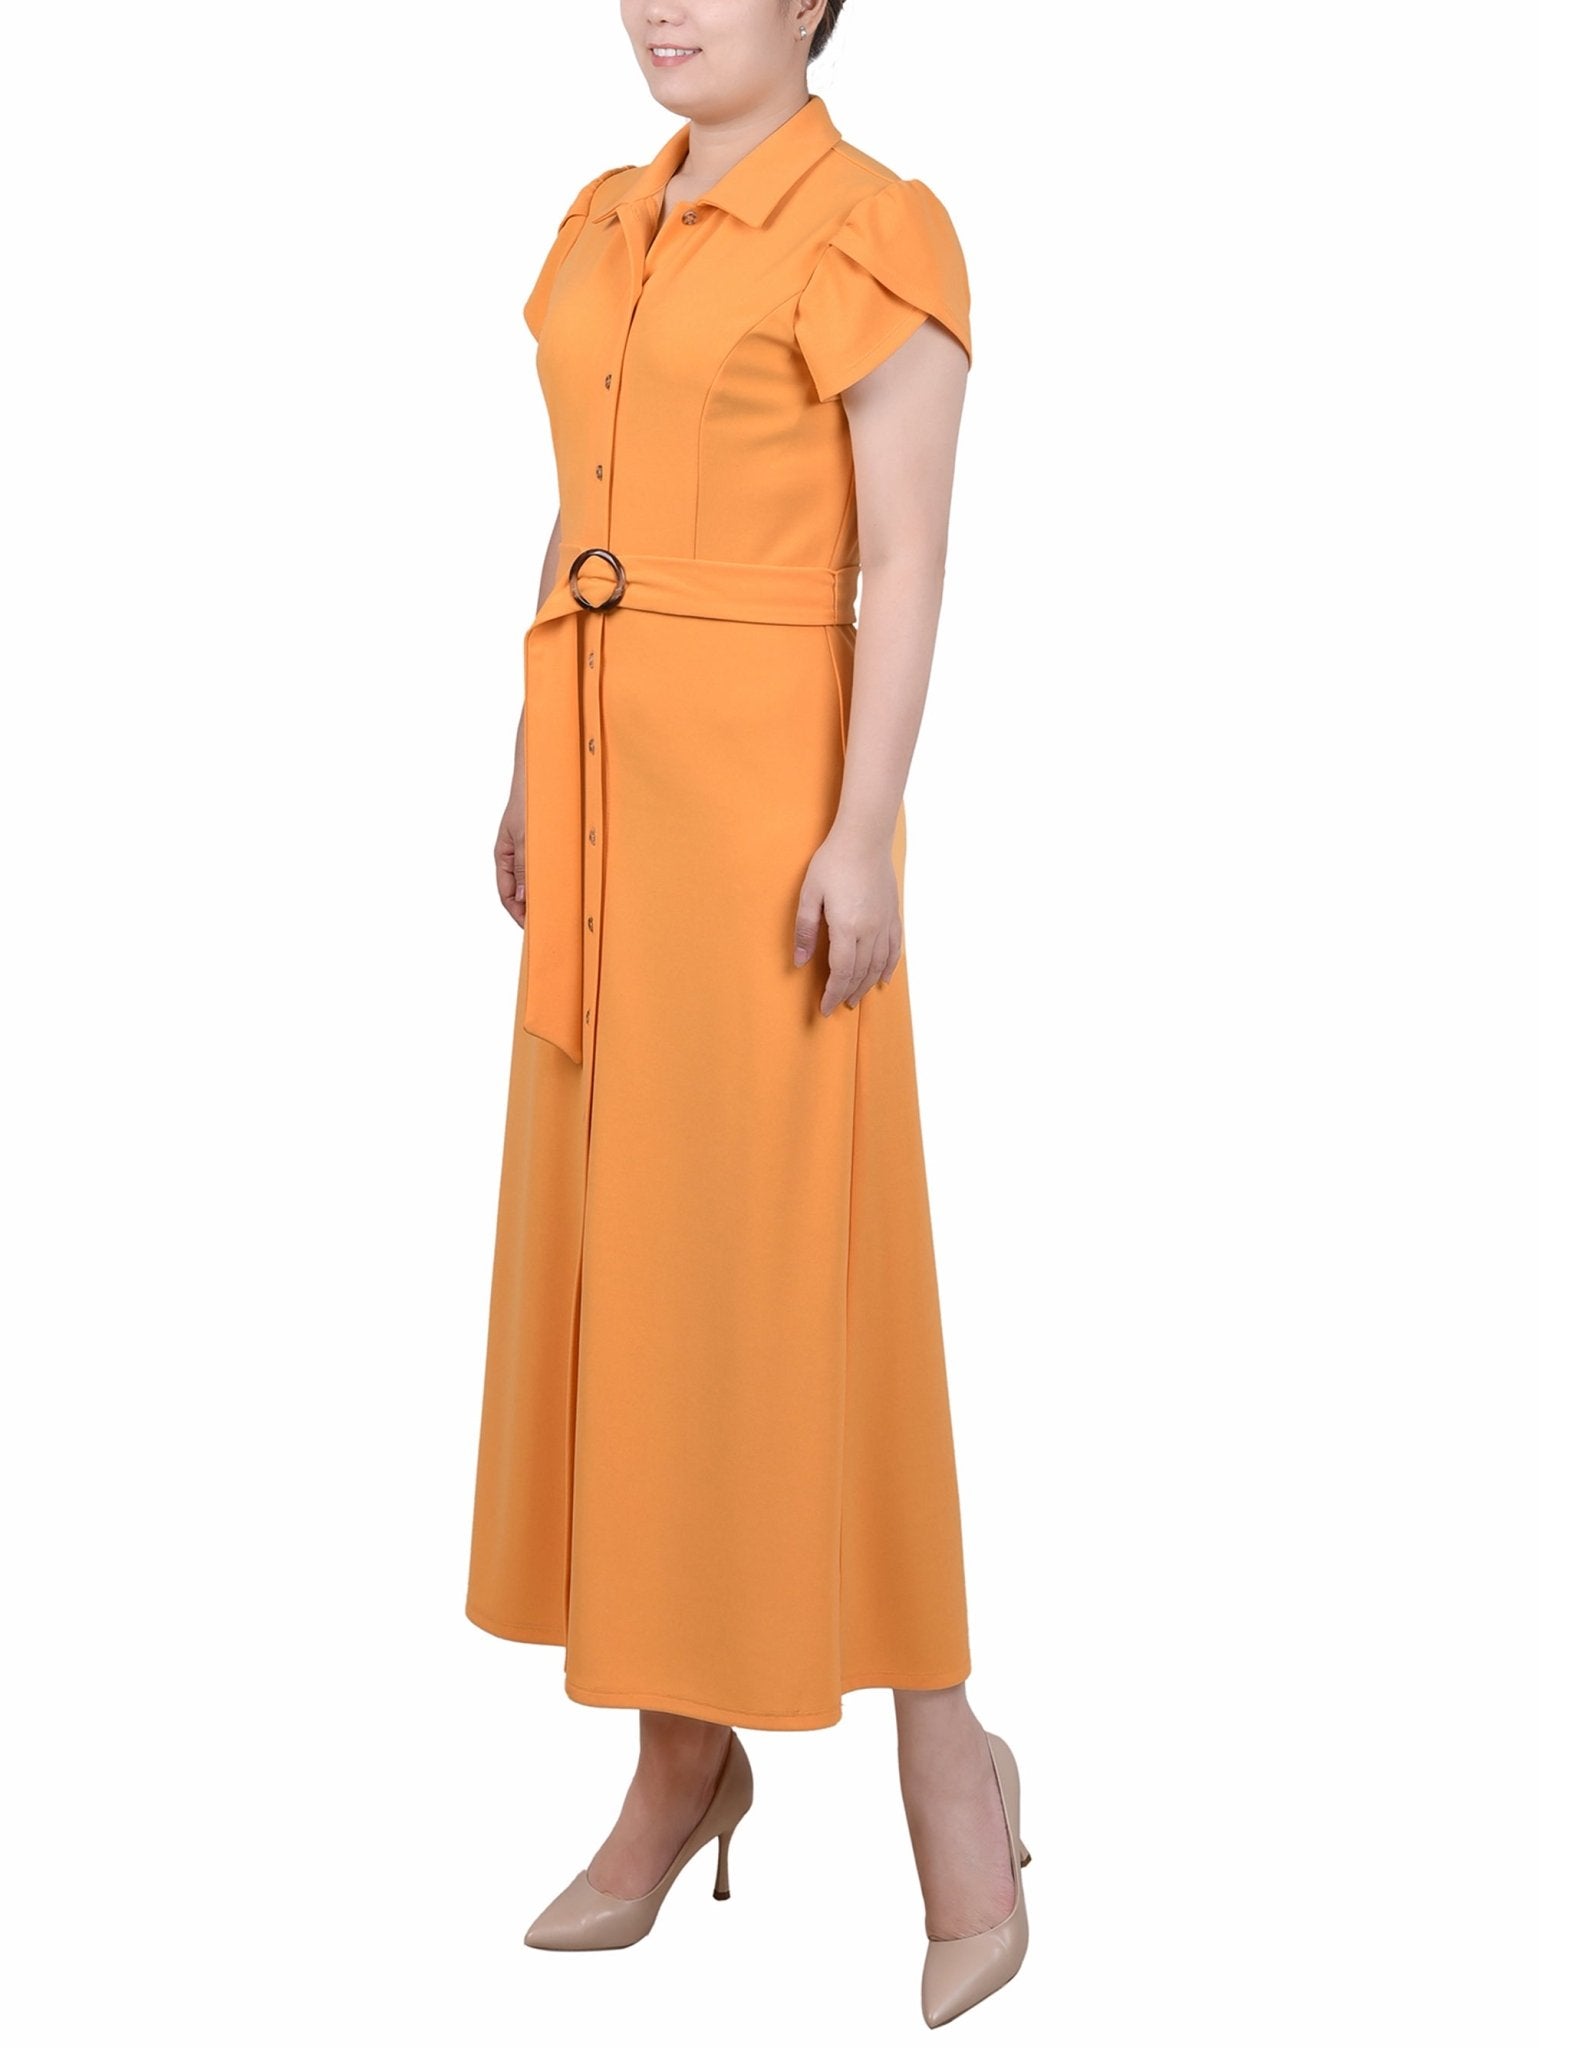 Midi Petal Sleeve Dress - Petite - DressbarnDresses